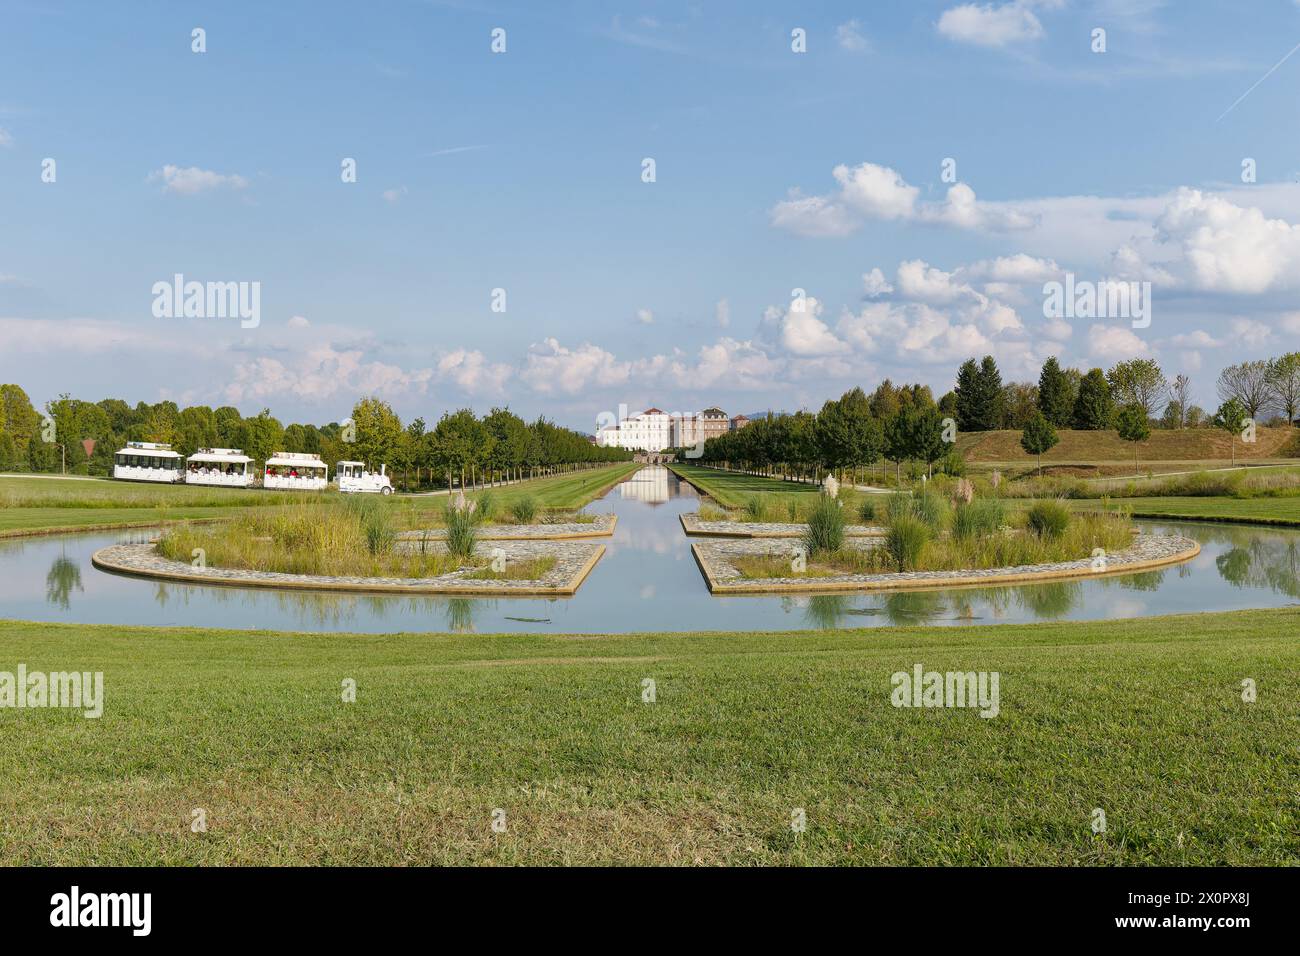 Blick auf den Garten des Königlichen Palastes von Venaria, Veranstaltungsort des G7-Ministertreffens zu Klima, Energie und Umwelt. Quelle: Alamy Stock Photo Stockfoto